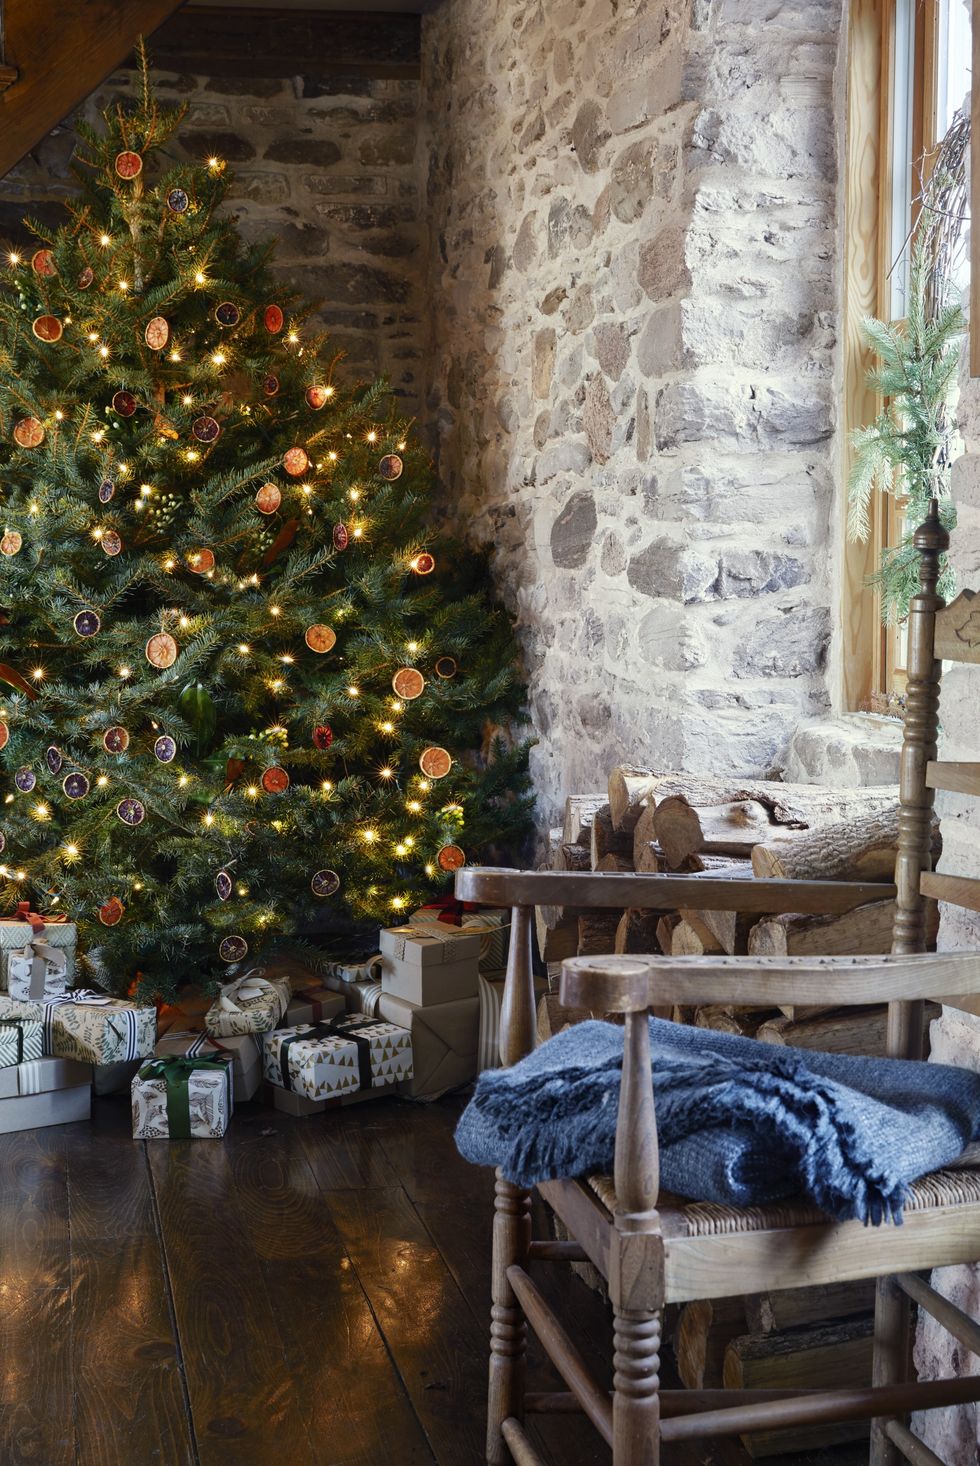 Rustic Christmas Tree Ideas for a Cozy Holiday - Farmhousehub